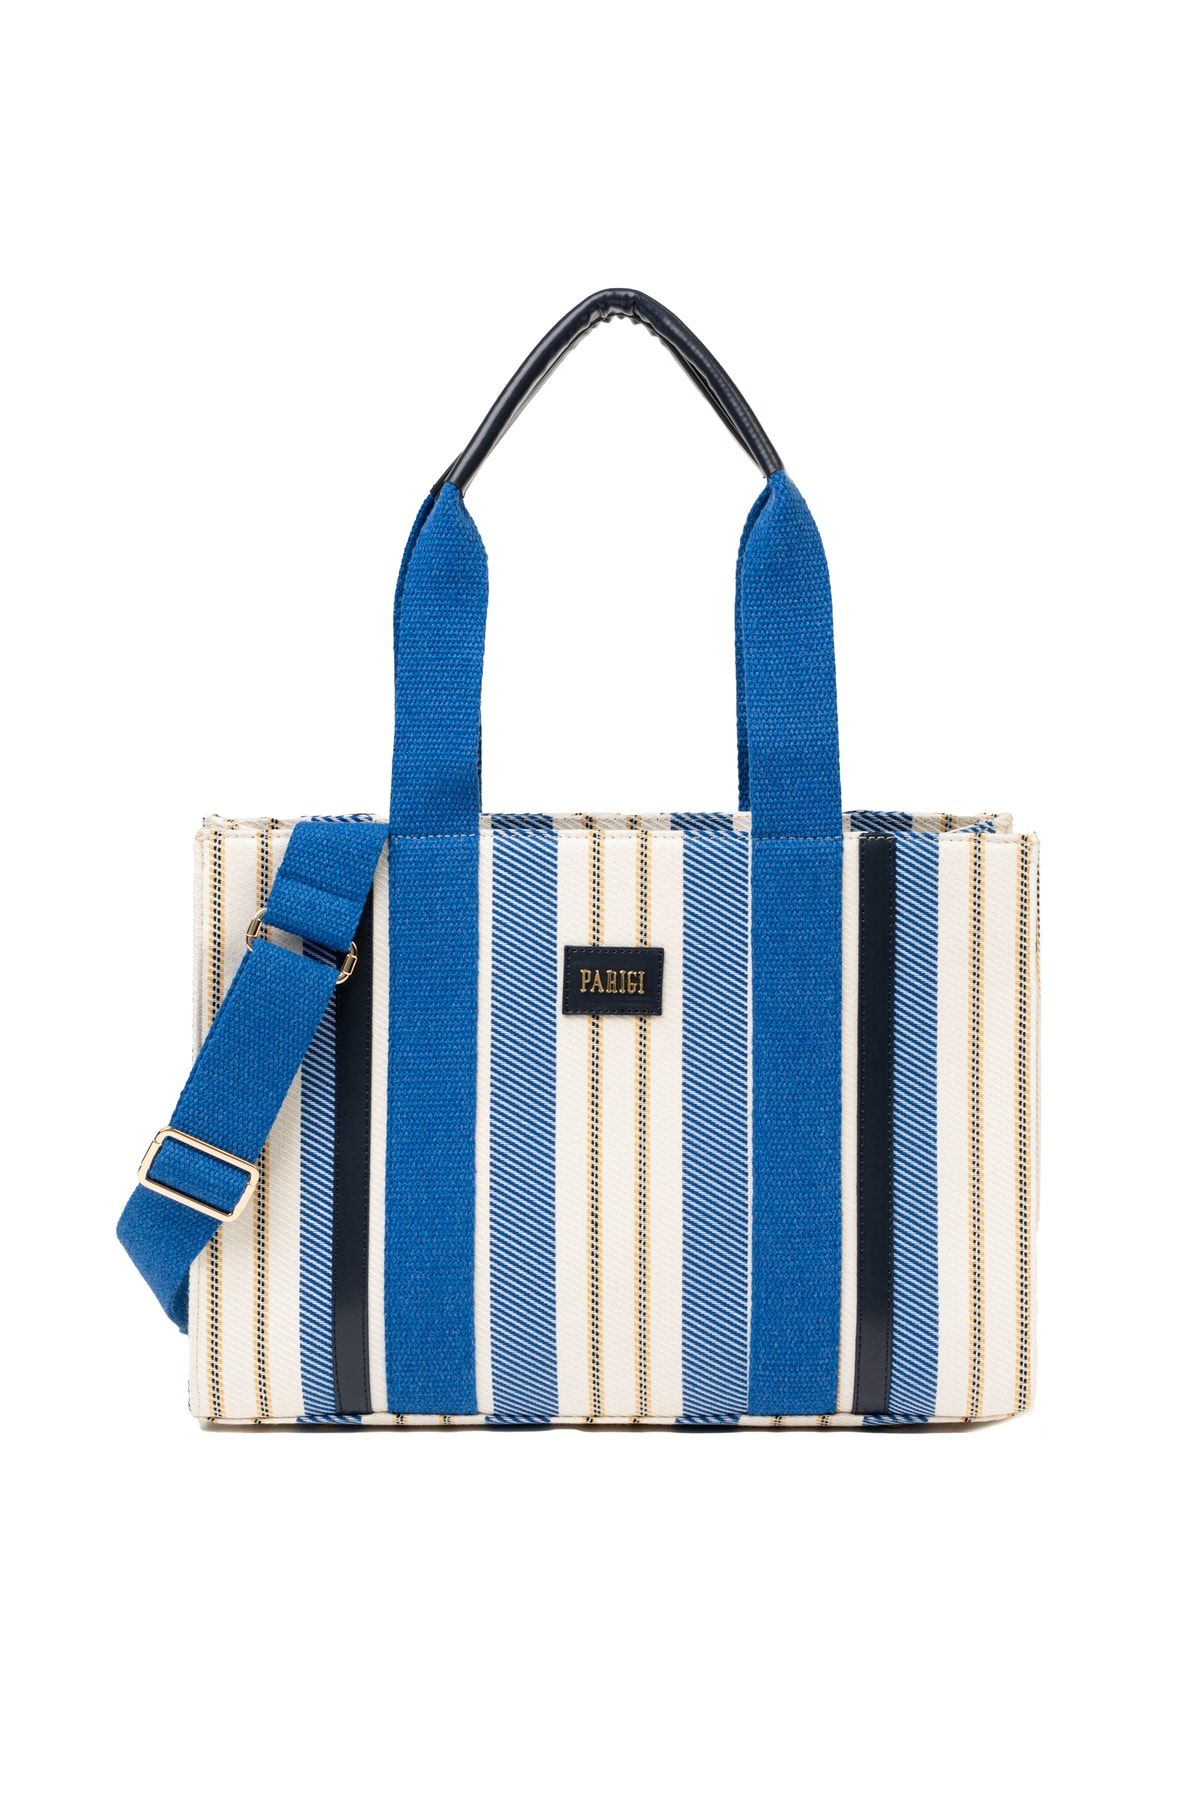 Blue Striped Shoulder Handbag, Colorful Best Designer Ladies' 9.45